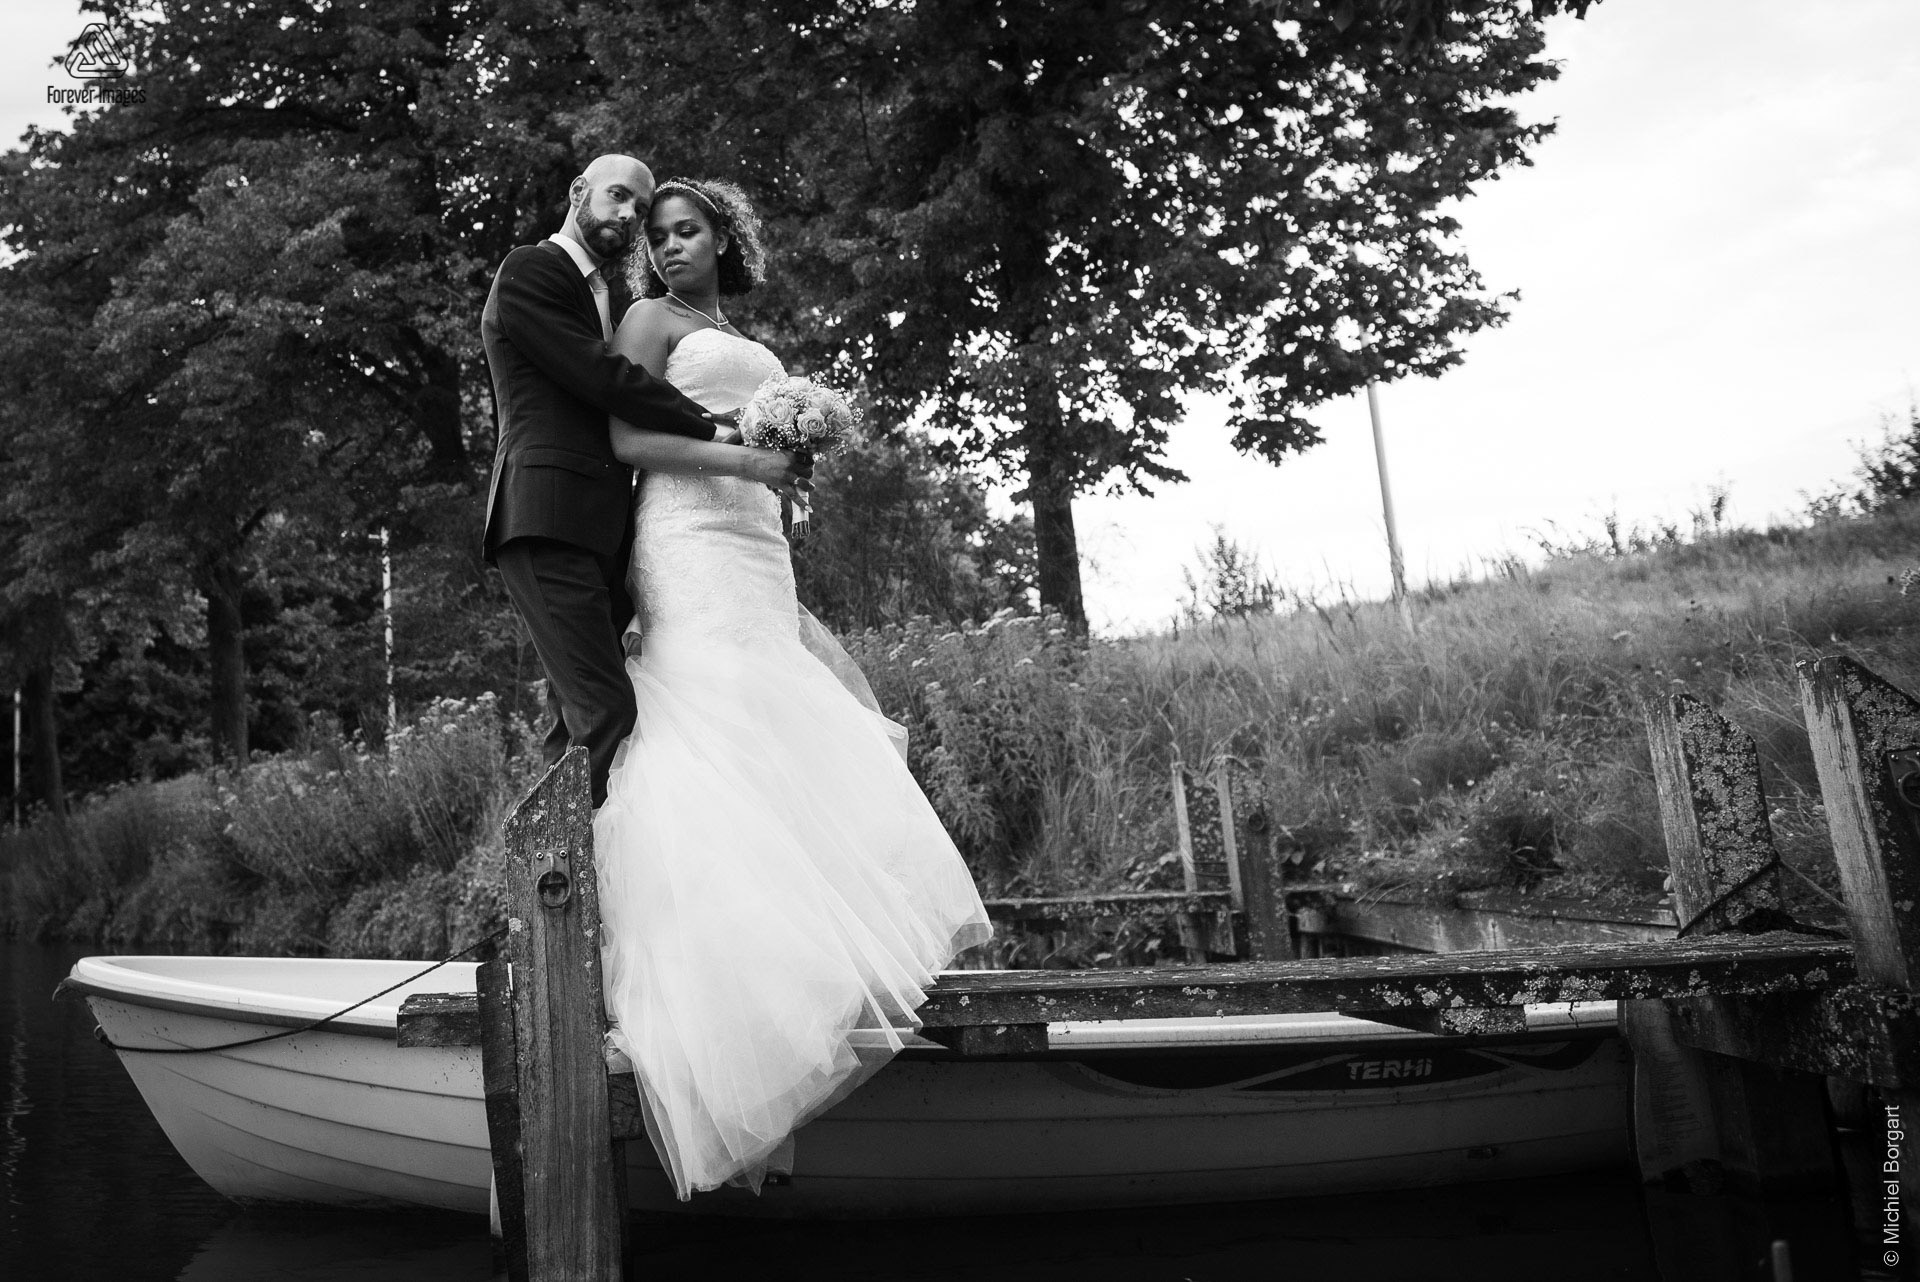 Bruidsfoto zwart-wit naast het huwelijksbootje | Kamiel Elseric | Bruidsfotograaf Michiel Borgart - Forever Images.